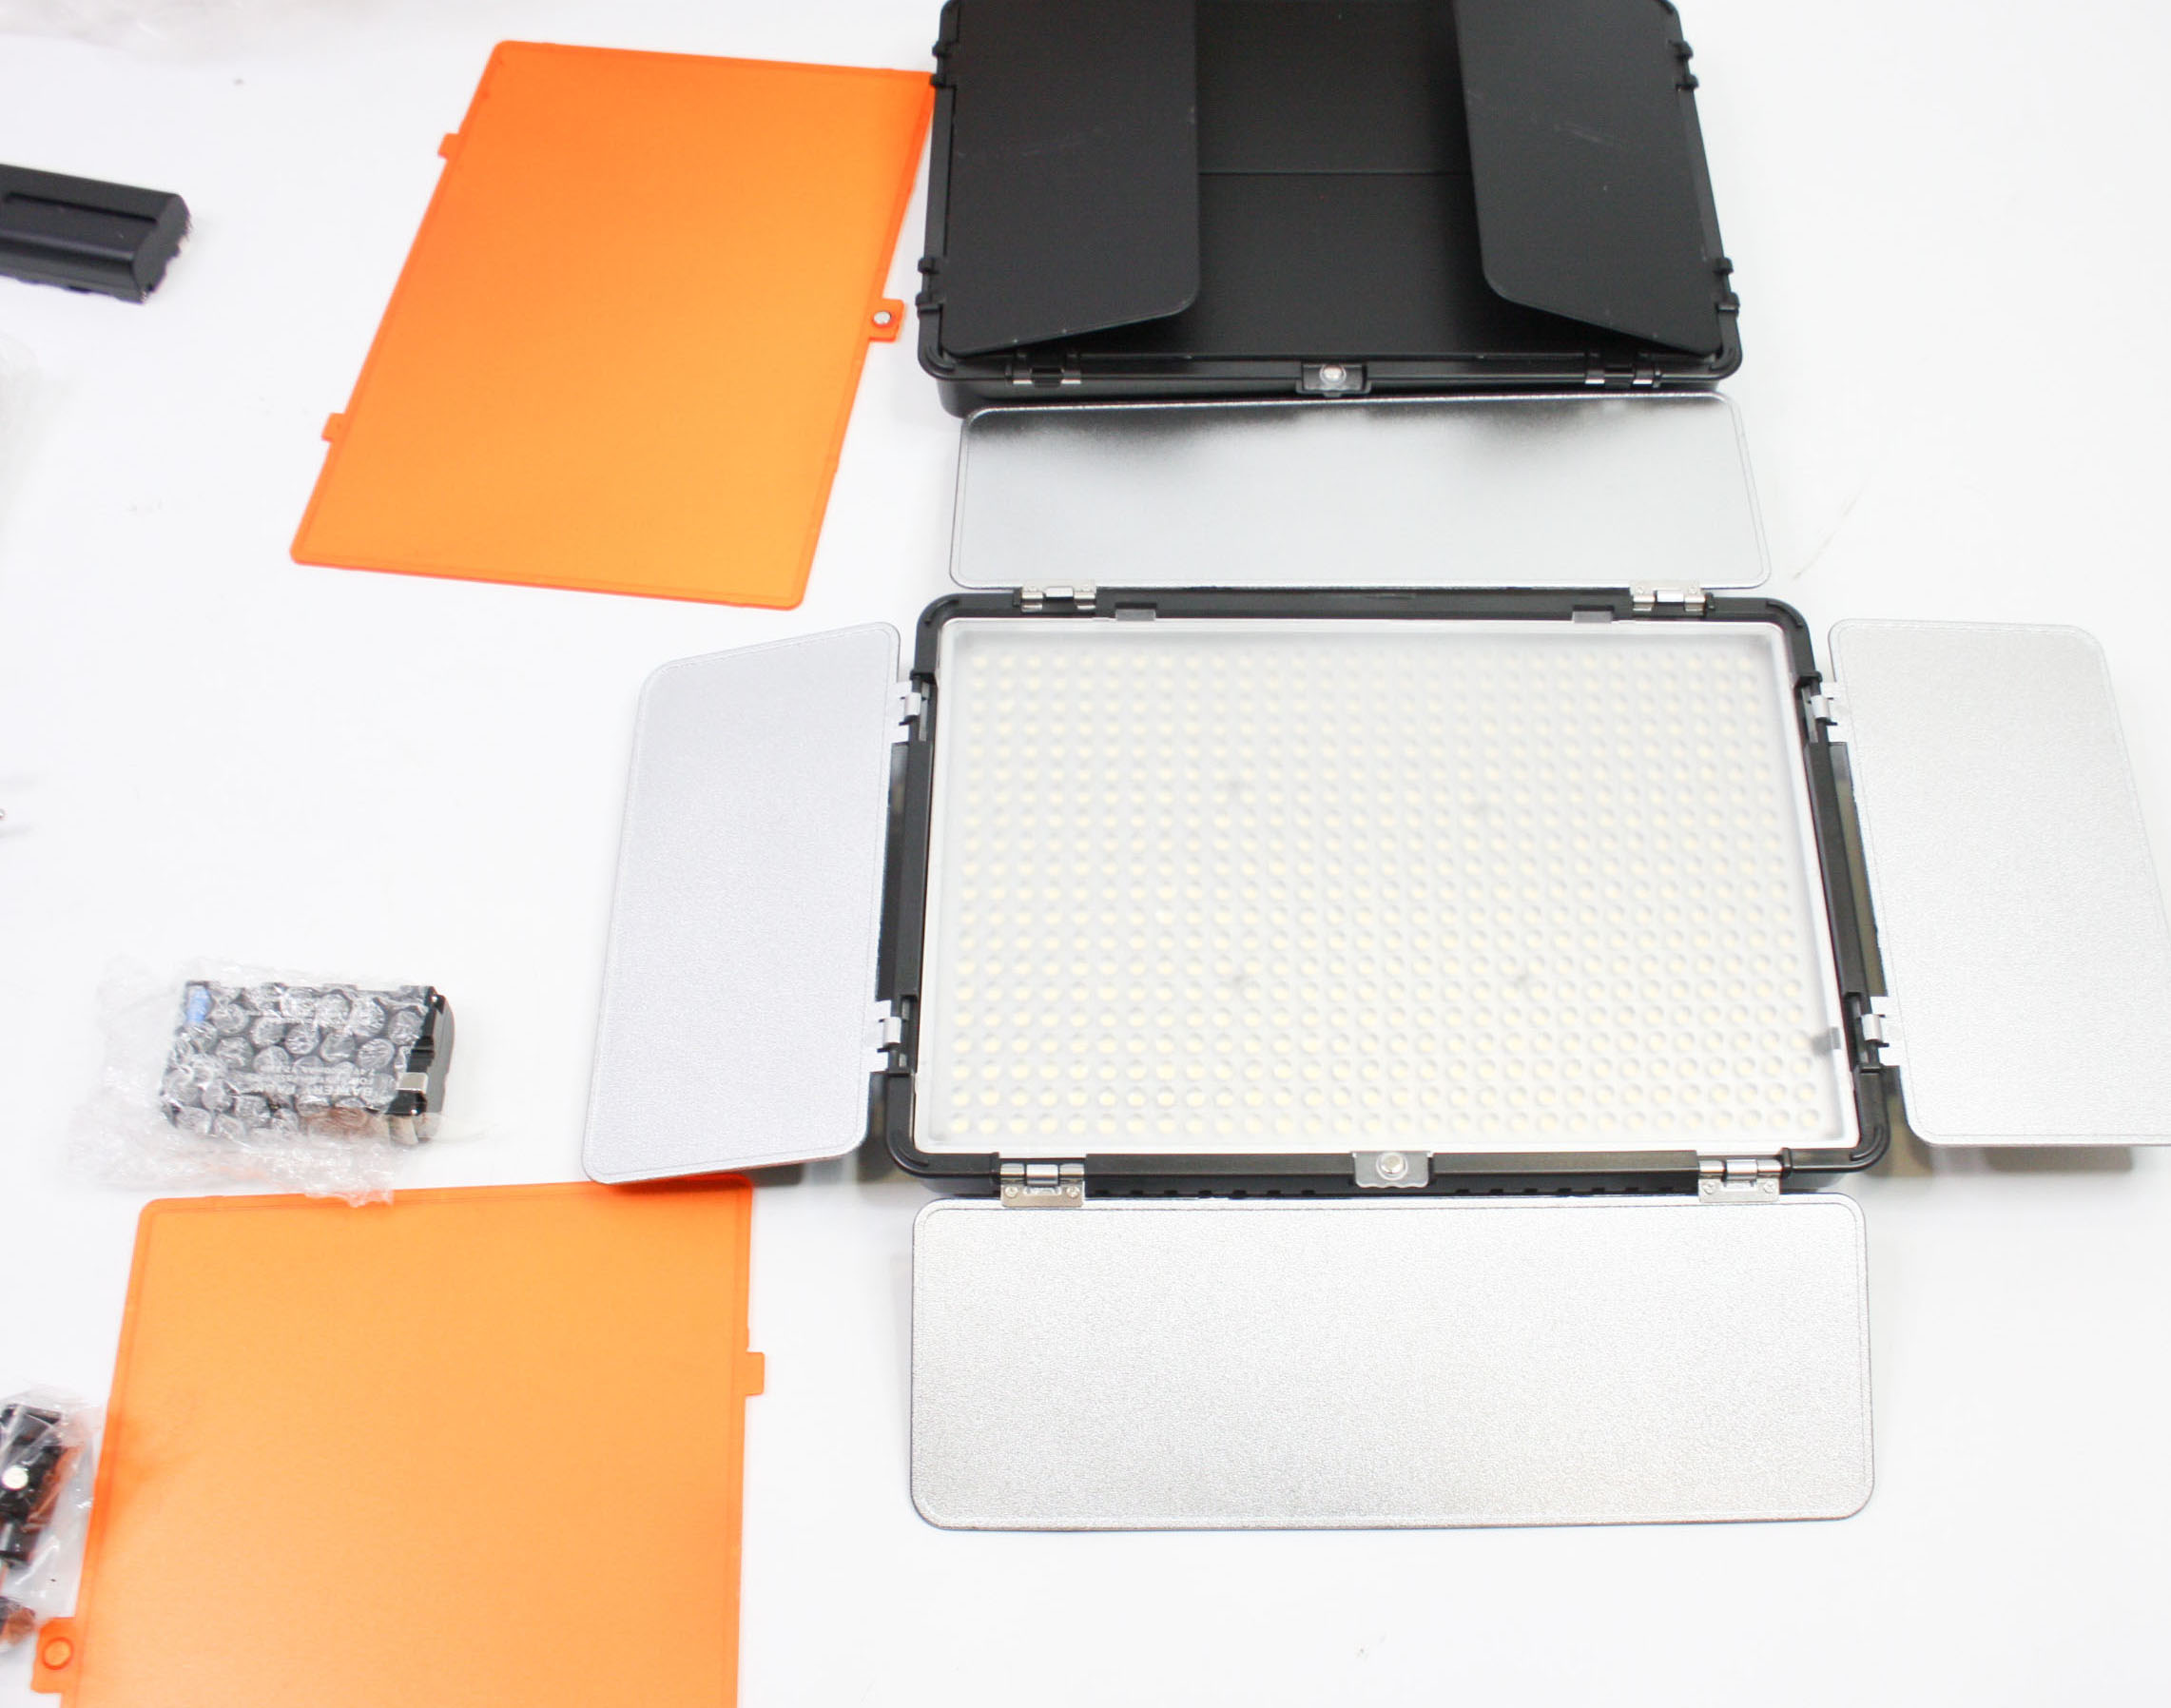 2 x SAMTIAN 600 LED Photo Light Vidéo Light Studio Light Kit CRI95 3200K 5600K